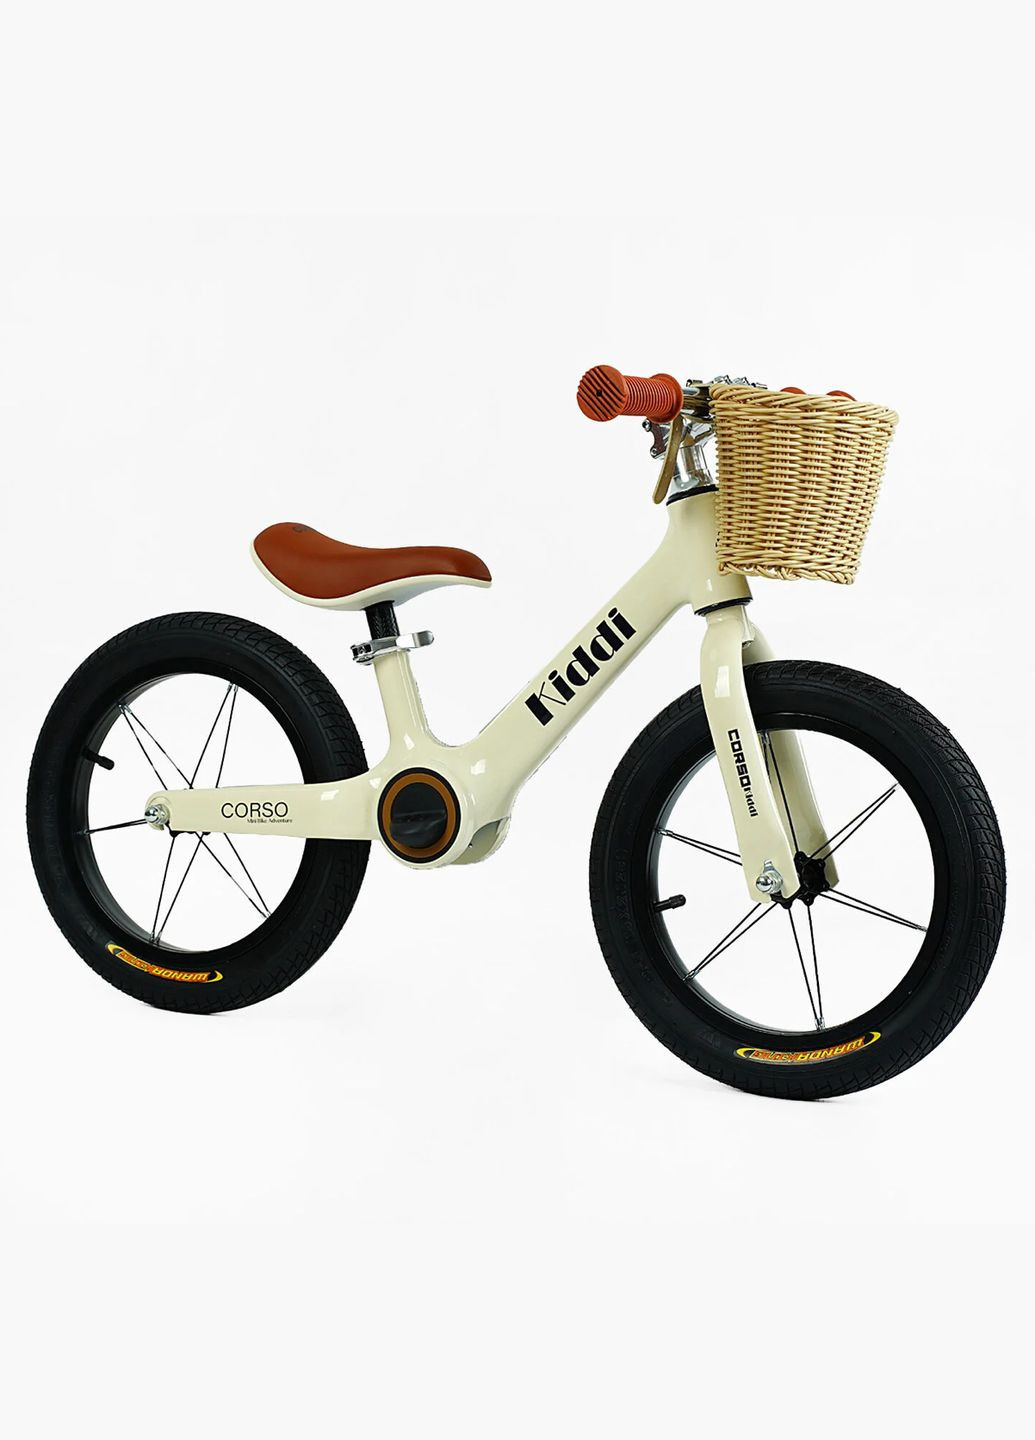 Детский велобег KIDDI LT-14104. Магниевая рама, надувные колеса 14", подставка для ног, корзина Corso (290668378)